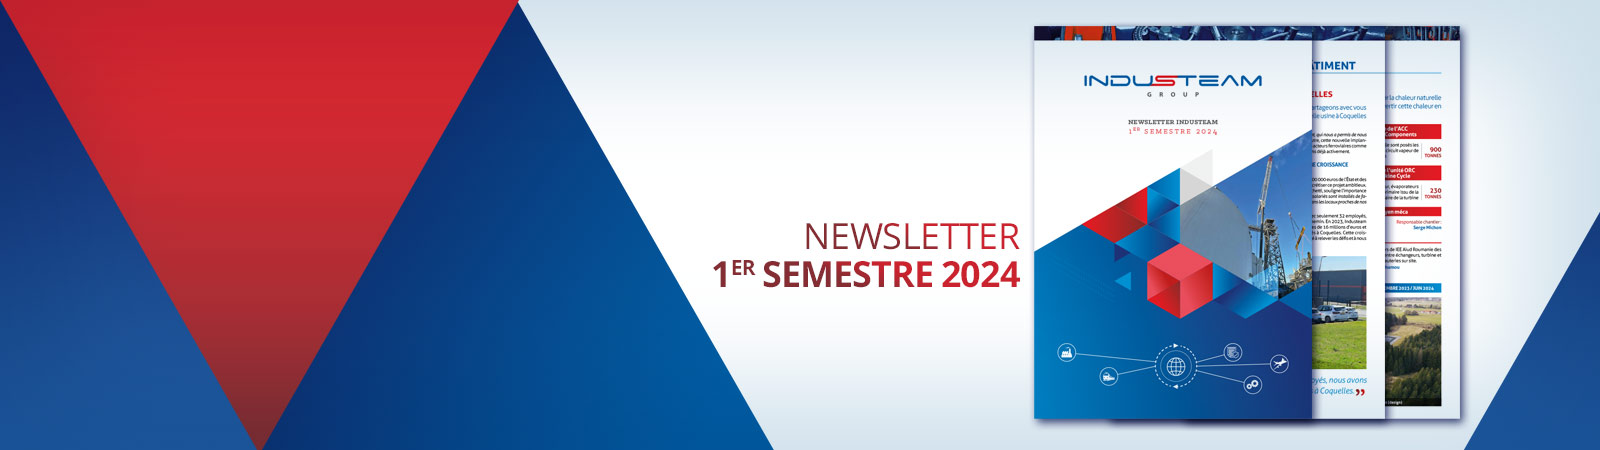 Newsletter 1er semestre 2024